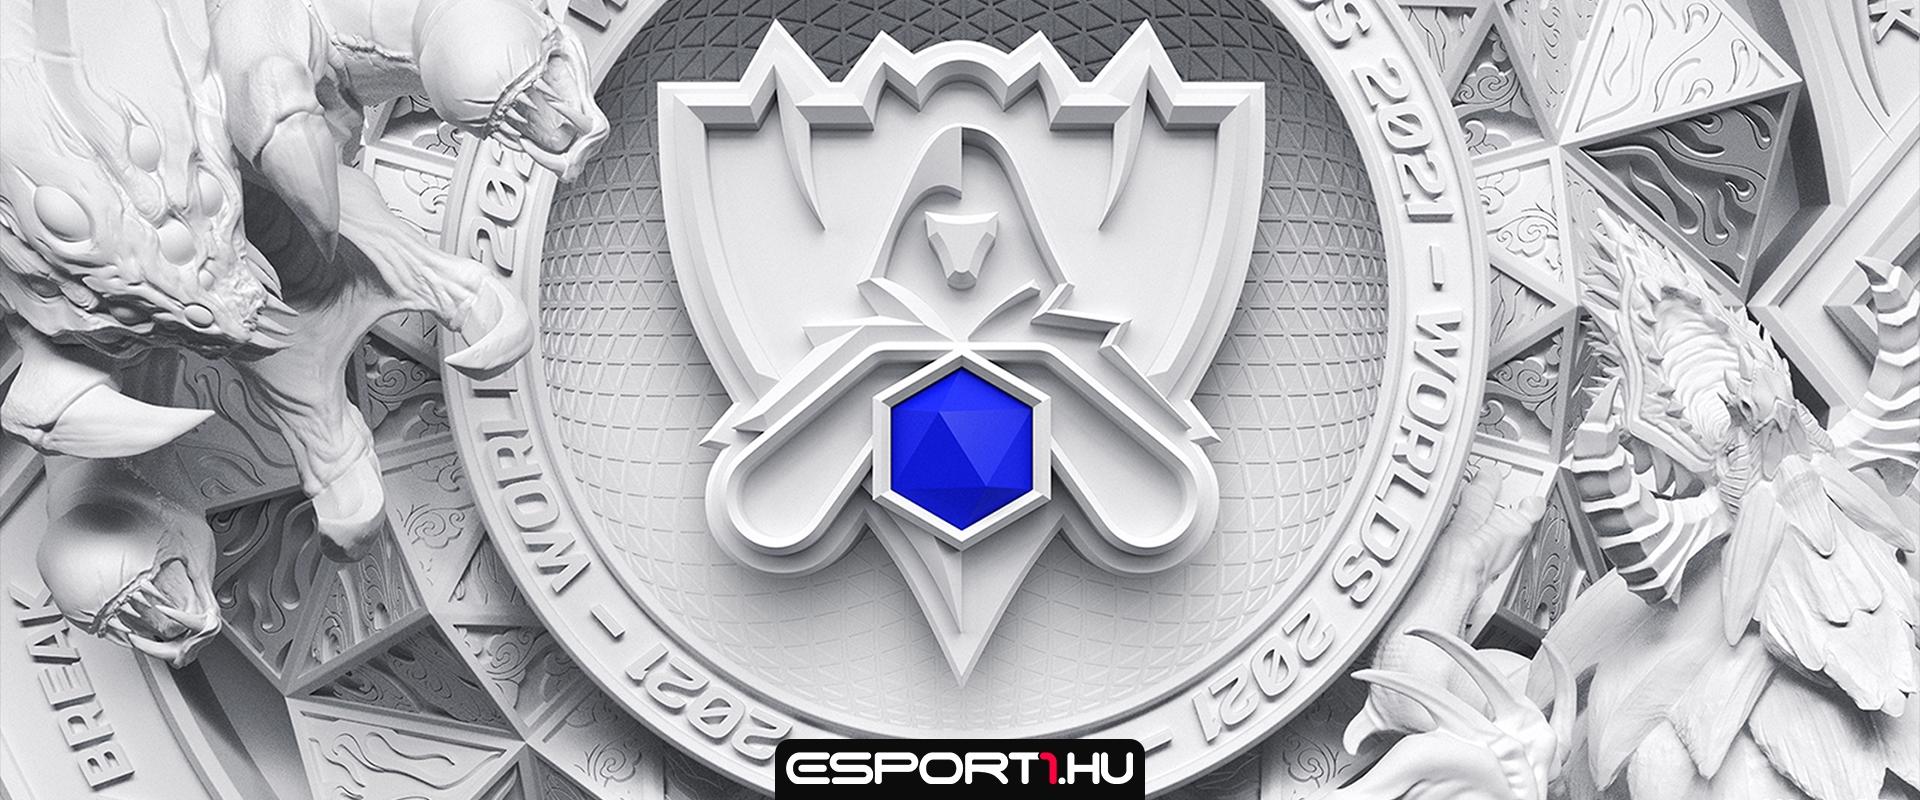 Rekord nézettséget hozott az idei League of Legends világbajnokság magyar nyelvű közvetítése